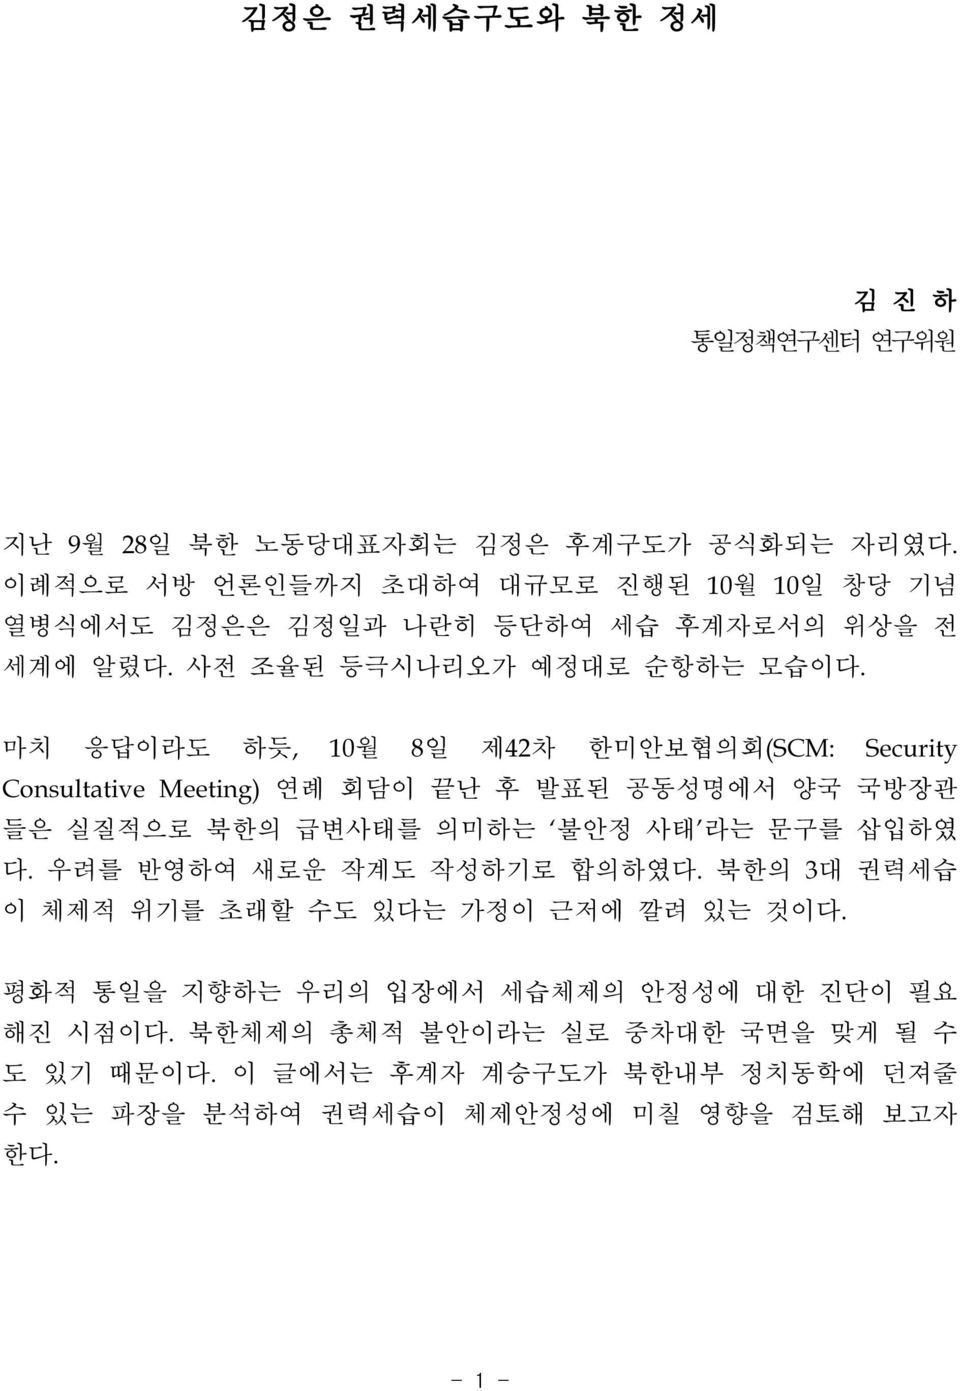 마치 응답이라도 하듯, 10월 8일 제42차 한미안보협의회(SCM: Security ConsultativeMeeting)연례 회담이 끝난 후 발표된 공동성명에서 양국 국방장관 들은 실질적으로 북한의 급변사태를 의미하는 불안정 사태 라는 문구를 삽입하였 다.